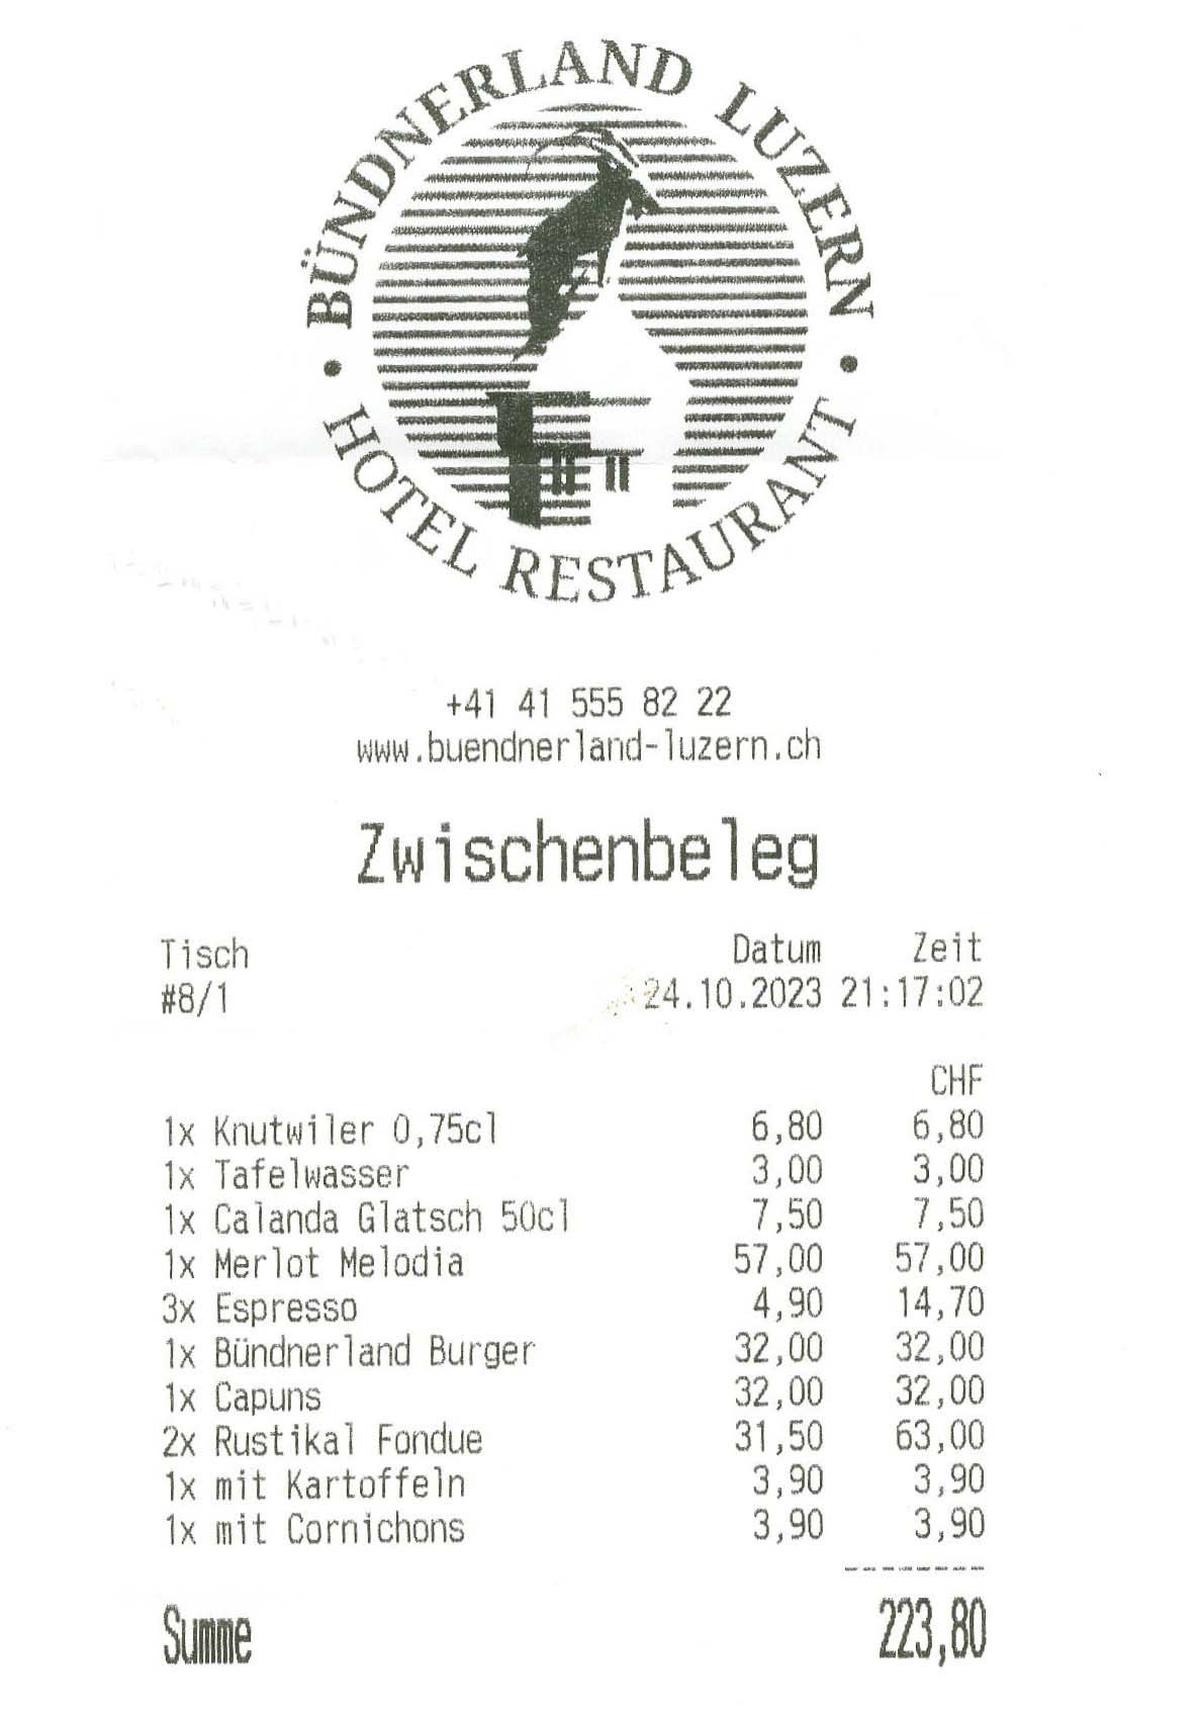 Die Rechnung für den Abend wurde uns auch im Bündnerland Luzern präsentiert.